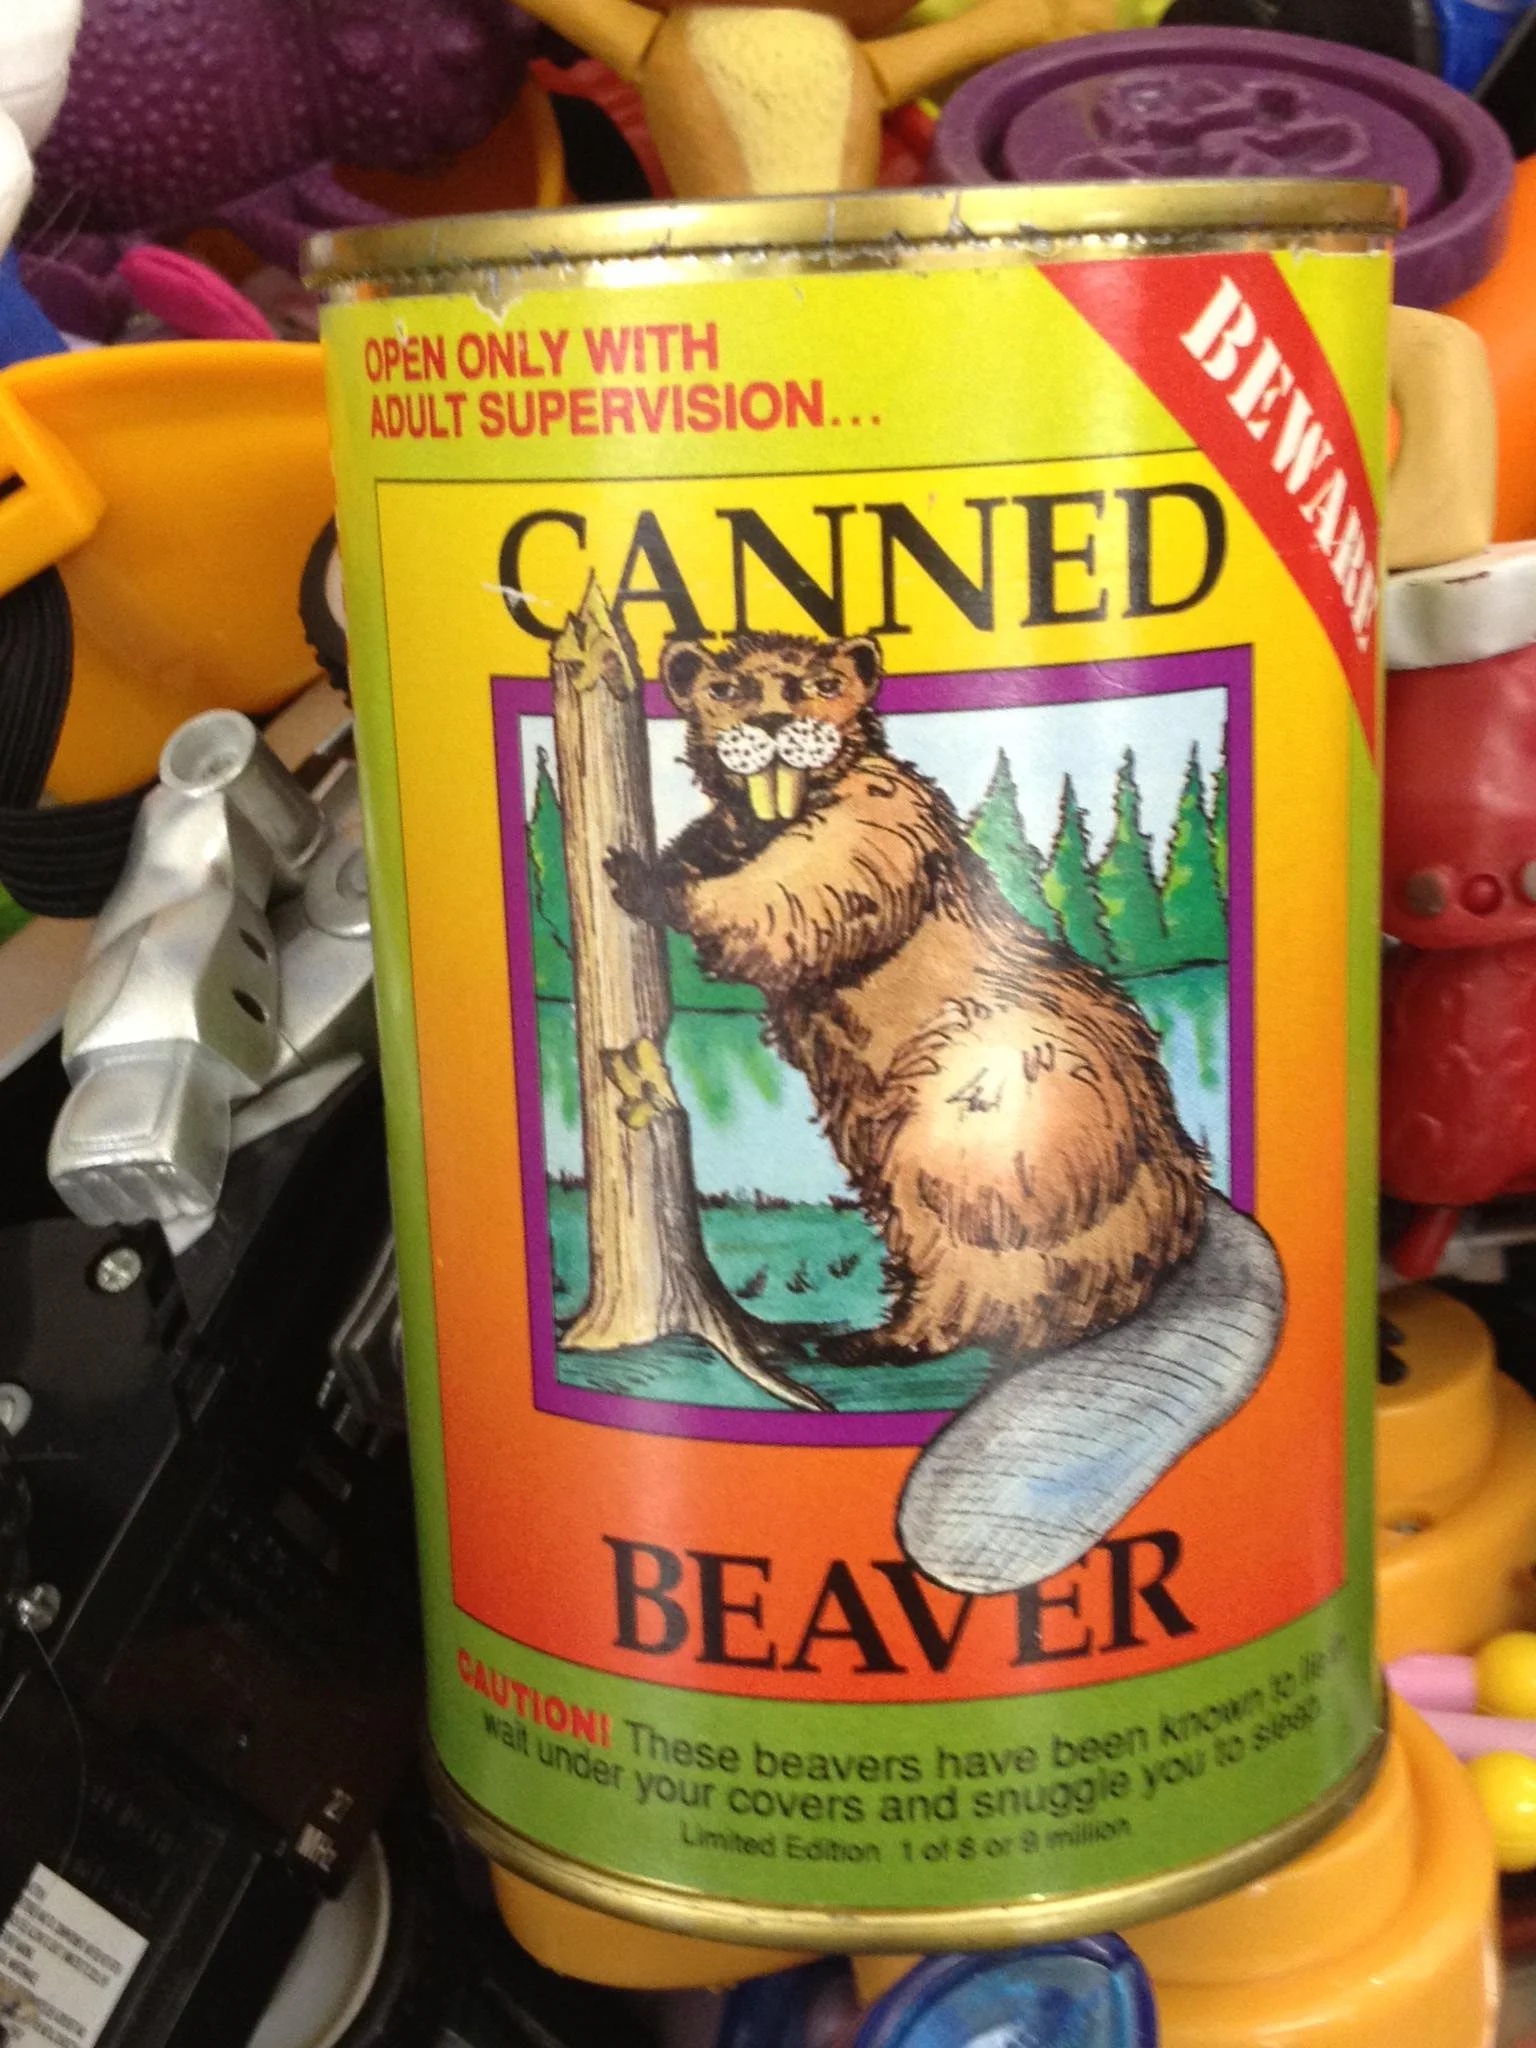 a1canned beaver.jpg